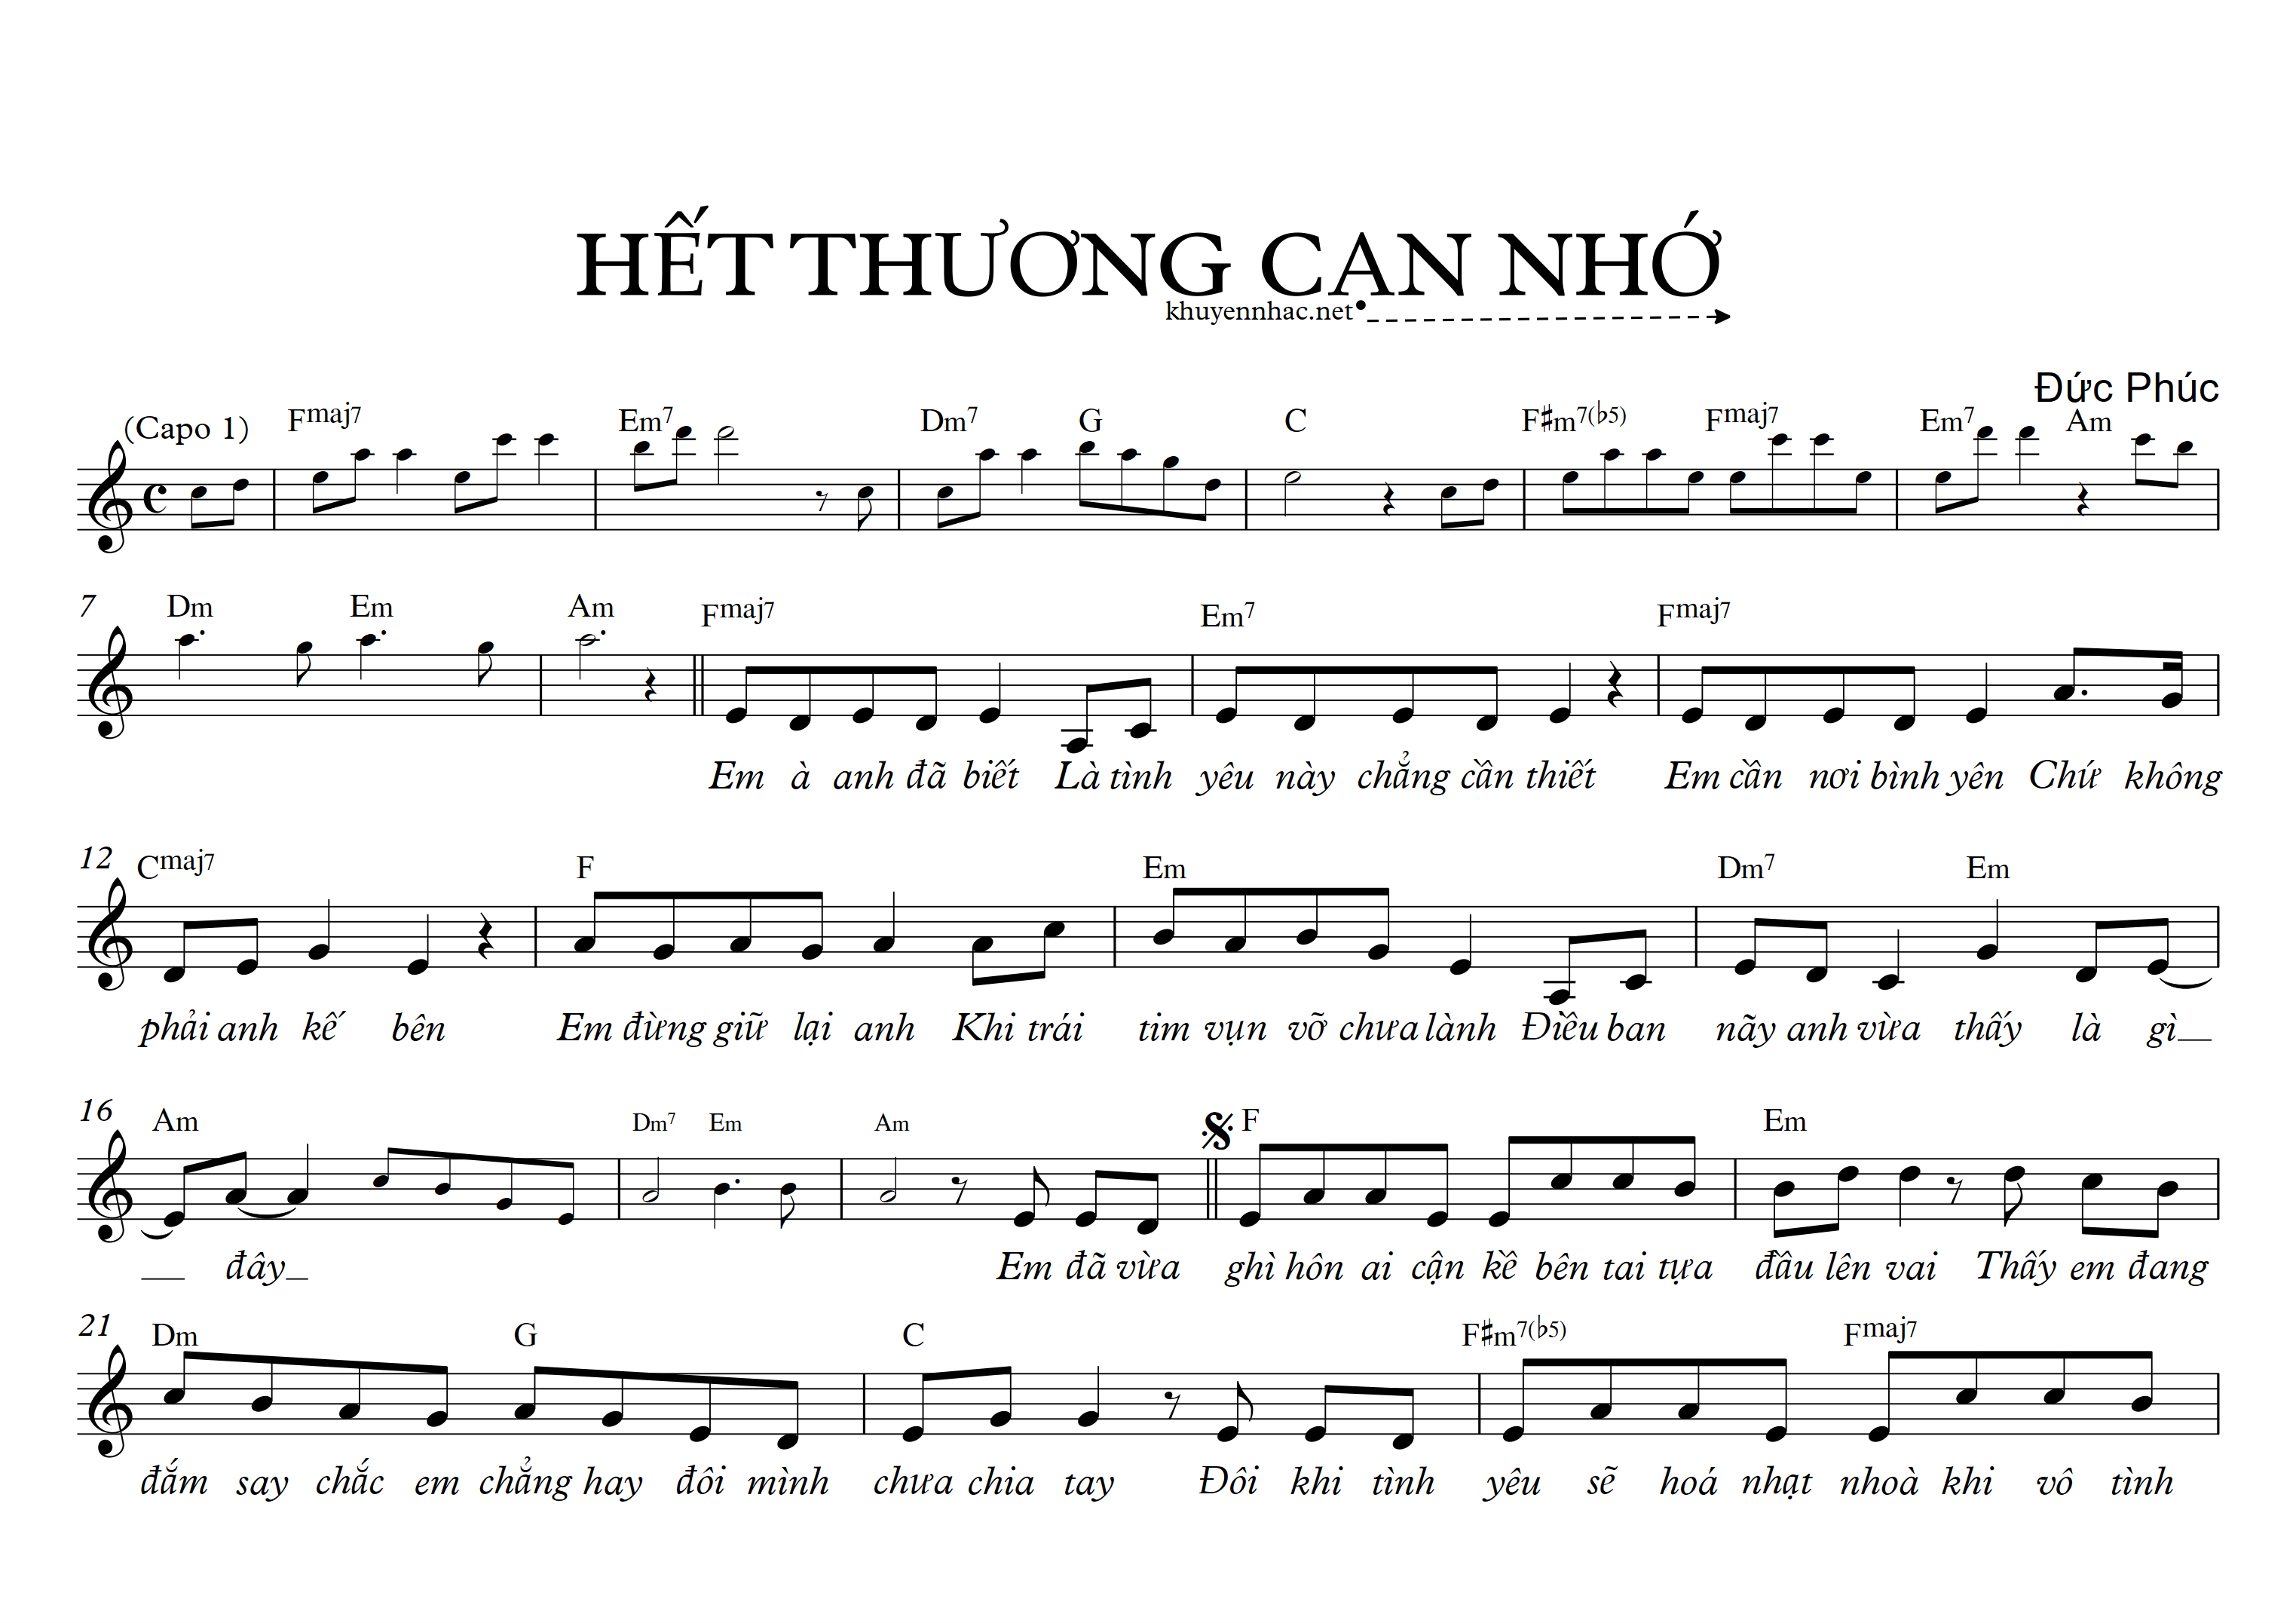 Het-thuong-can-nho_0001